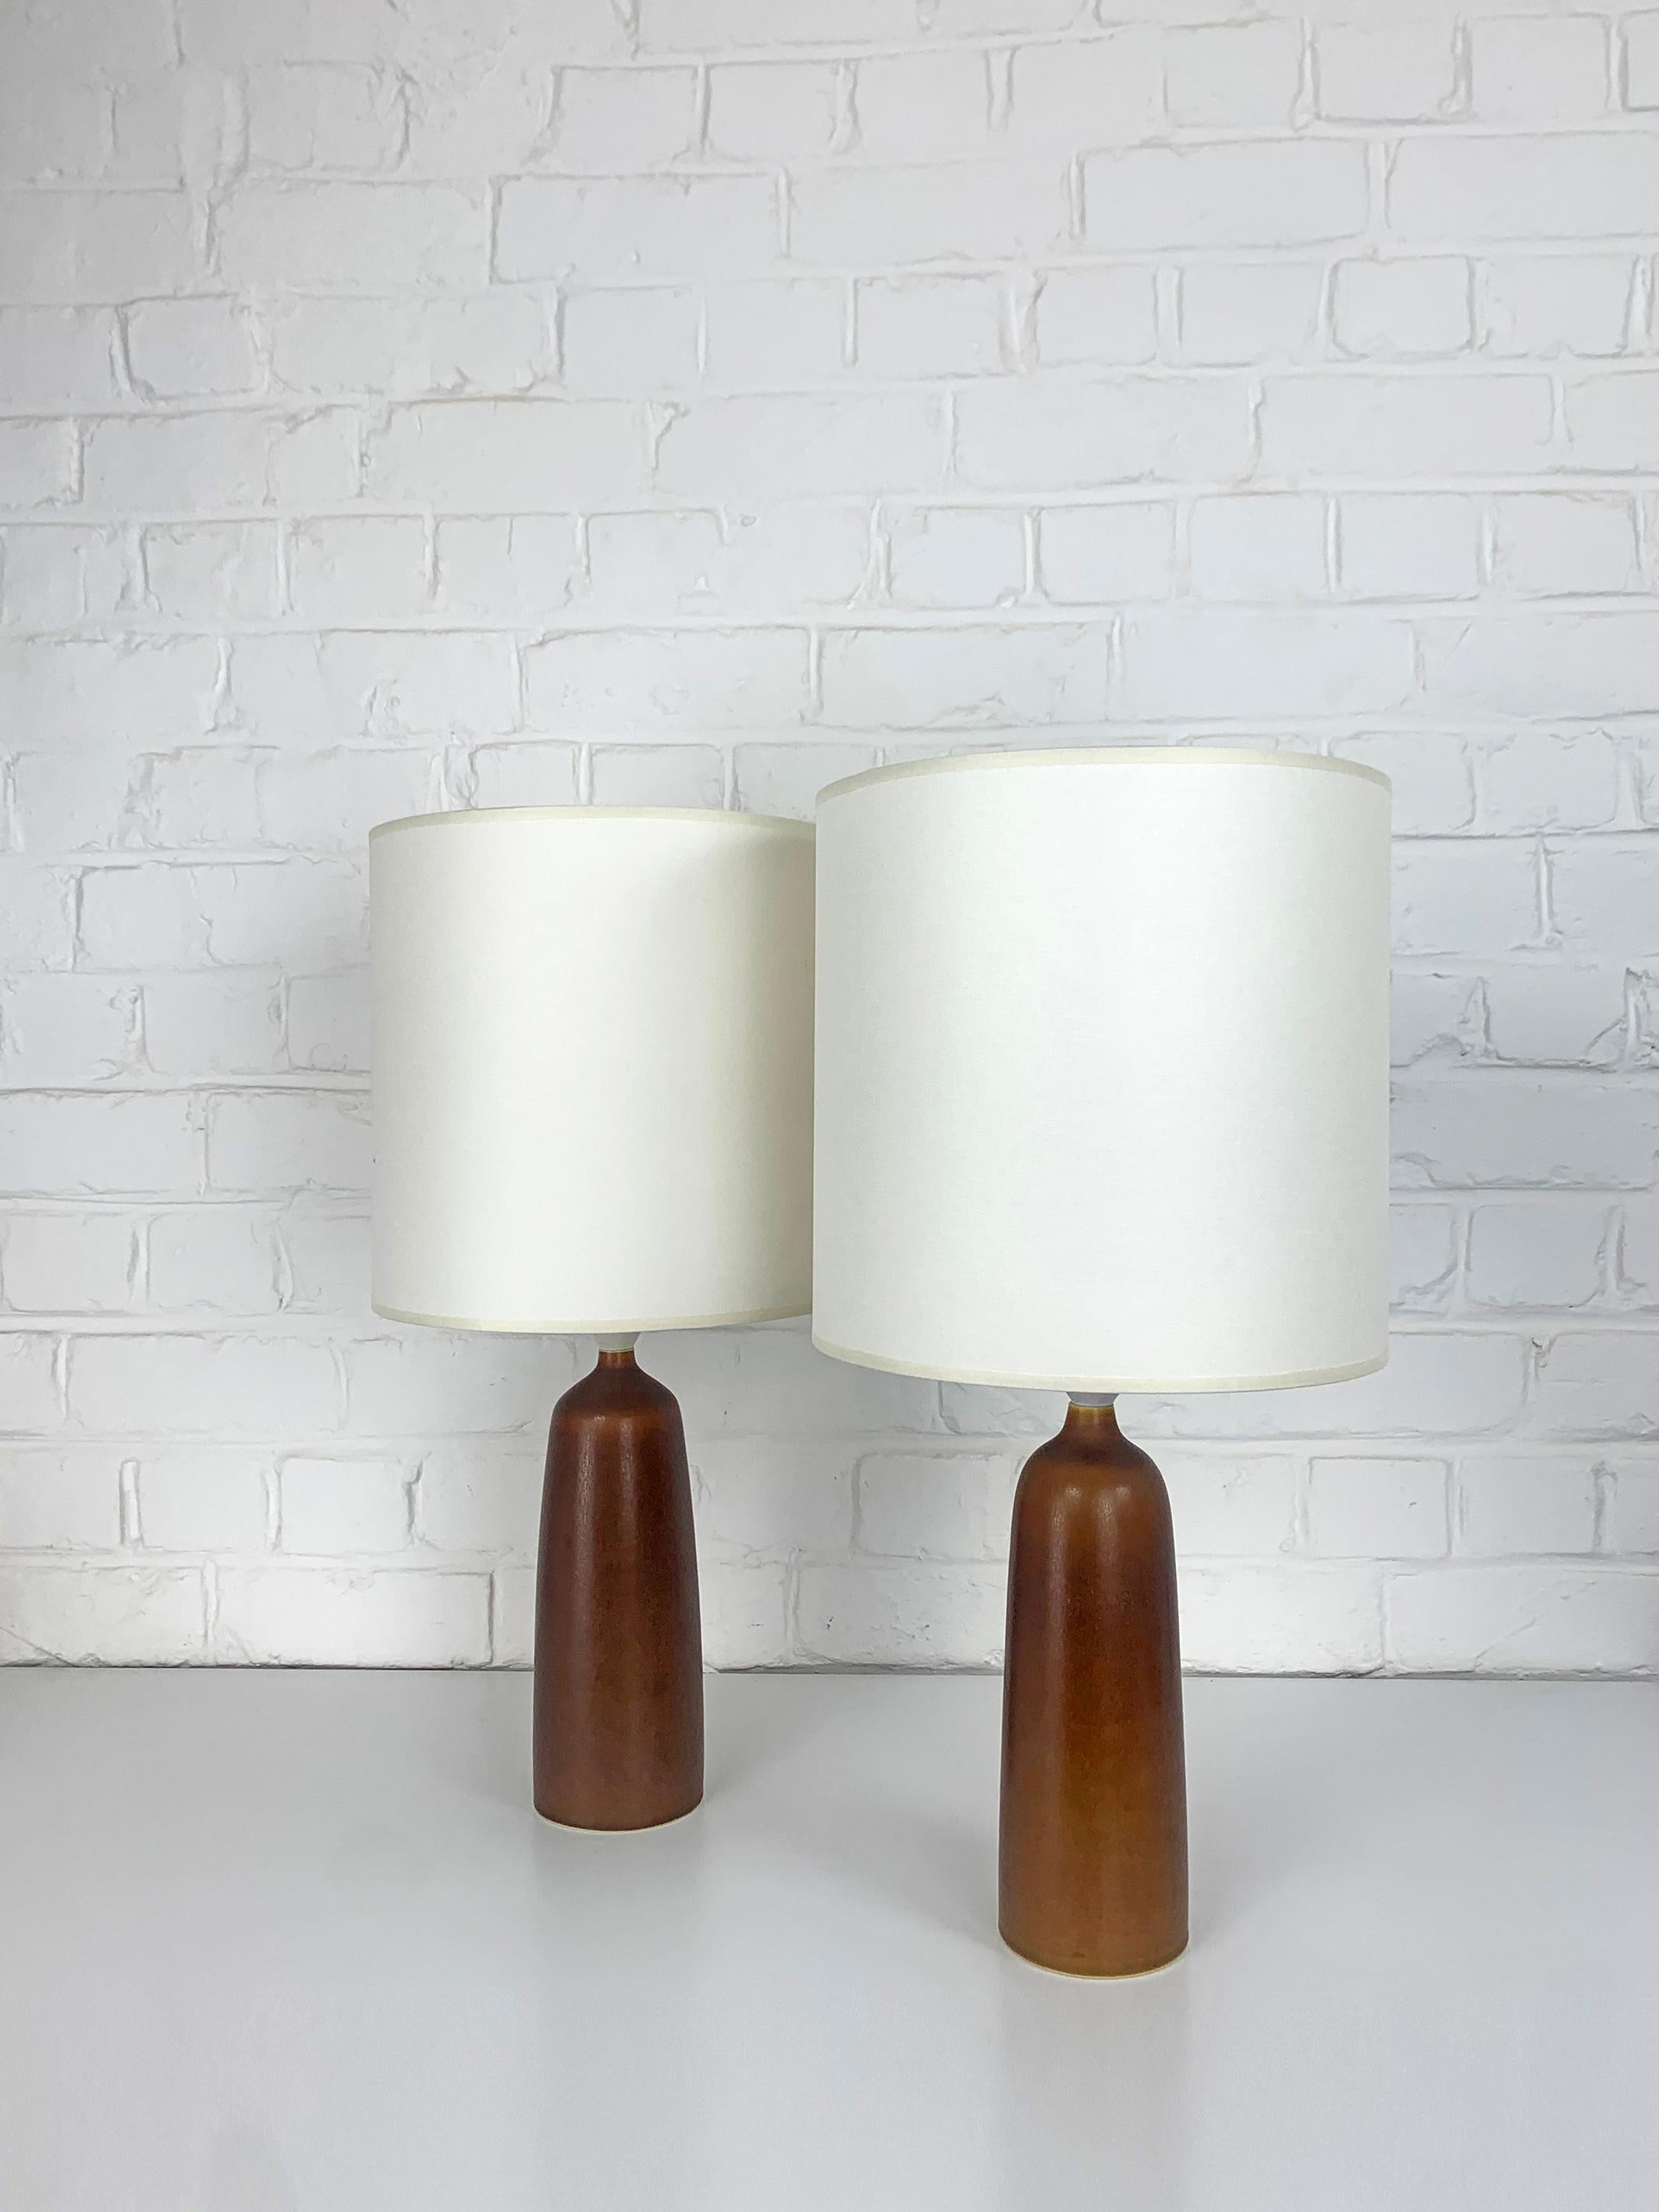 Paire de lampes de table en grès brun caramel, modèle DL17, produites par Palshus (Danemark). 

Palshus a été fondé par Per et son épouse Annelise Linnemann-Schmidt. Le couple a créé et produit des objets en chamotte (vaisselle, vases et lampes).